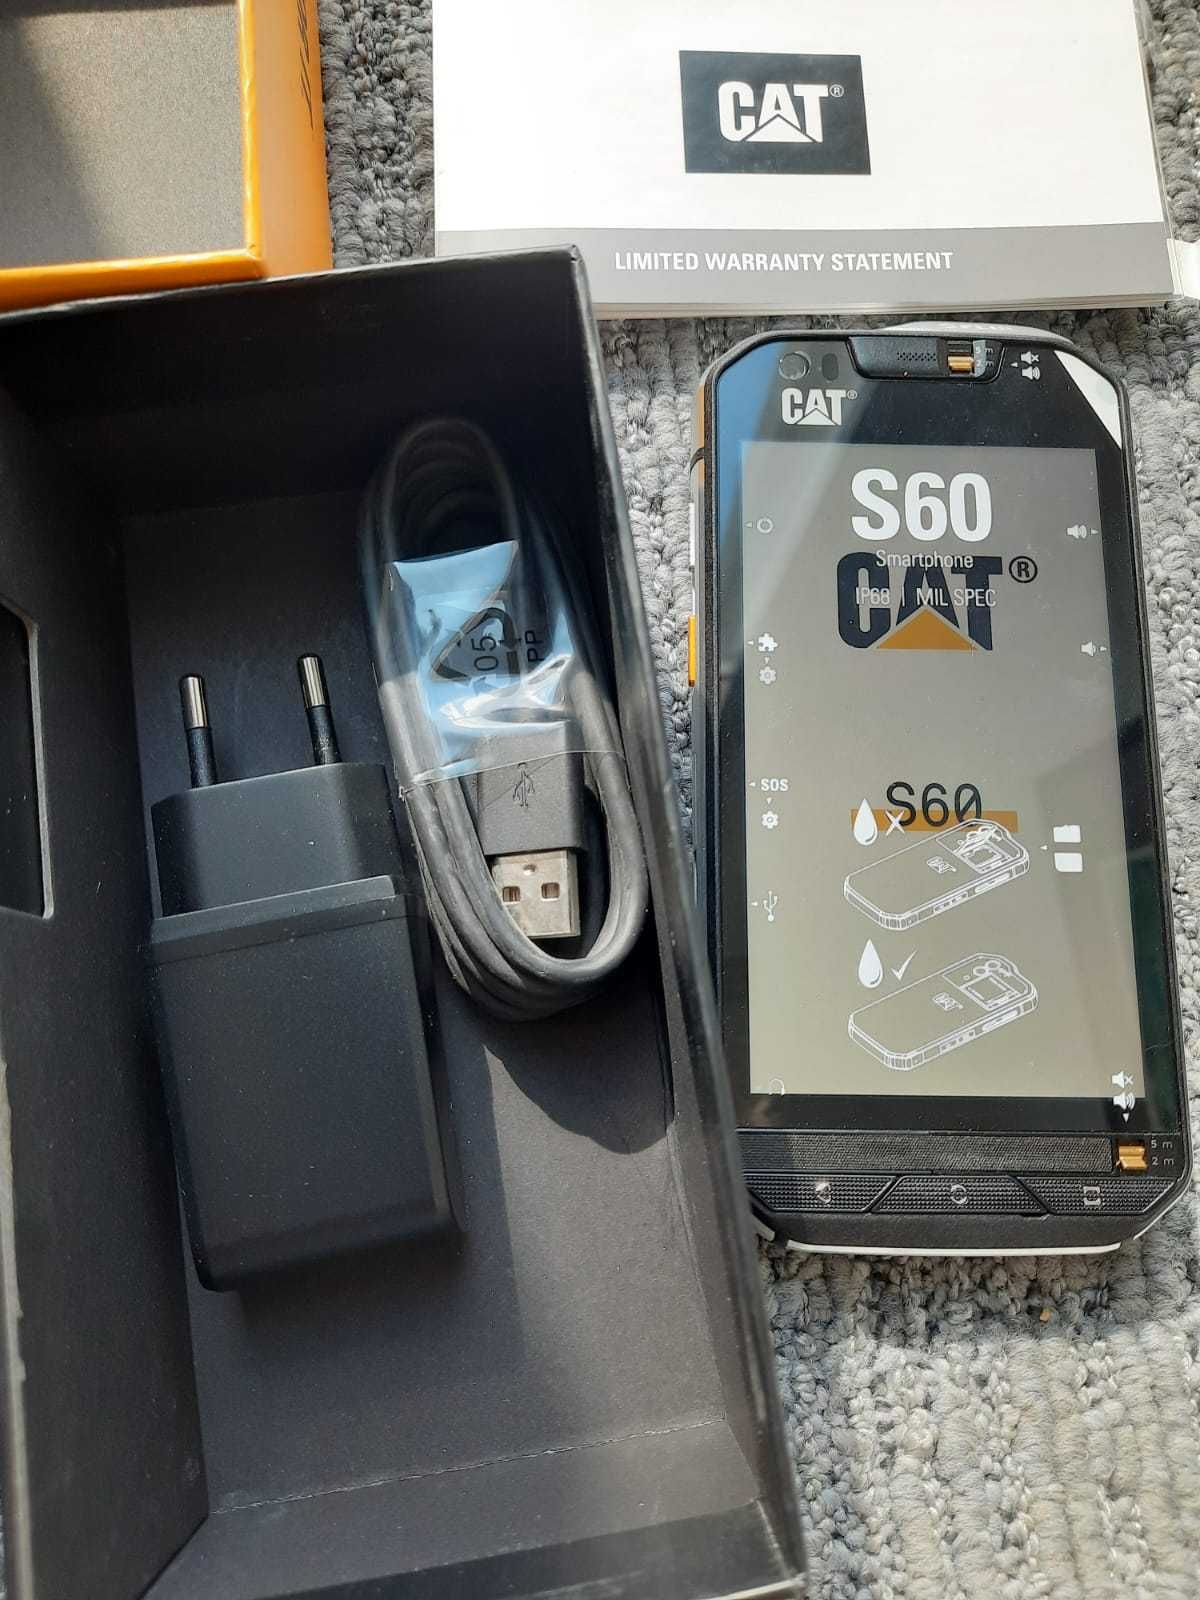 CAT S60 Telefon Caterpillar